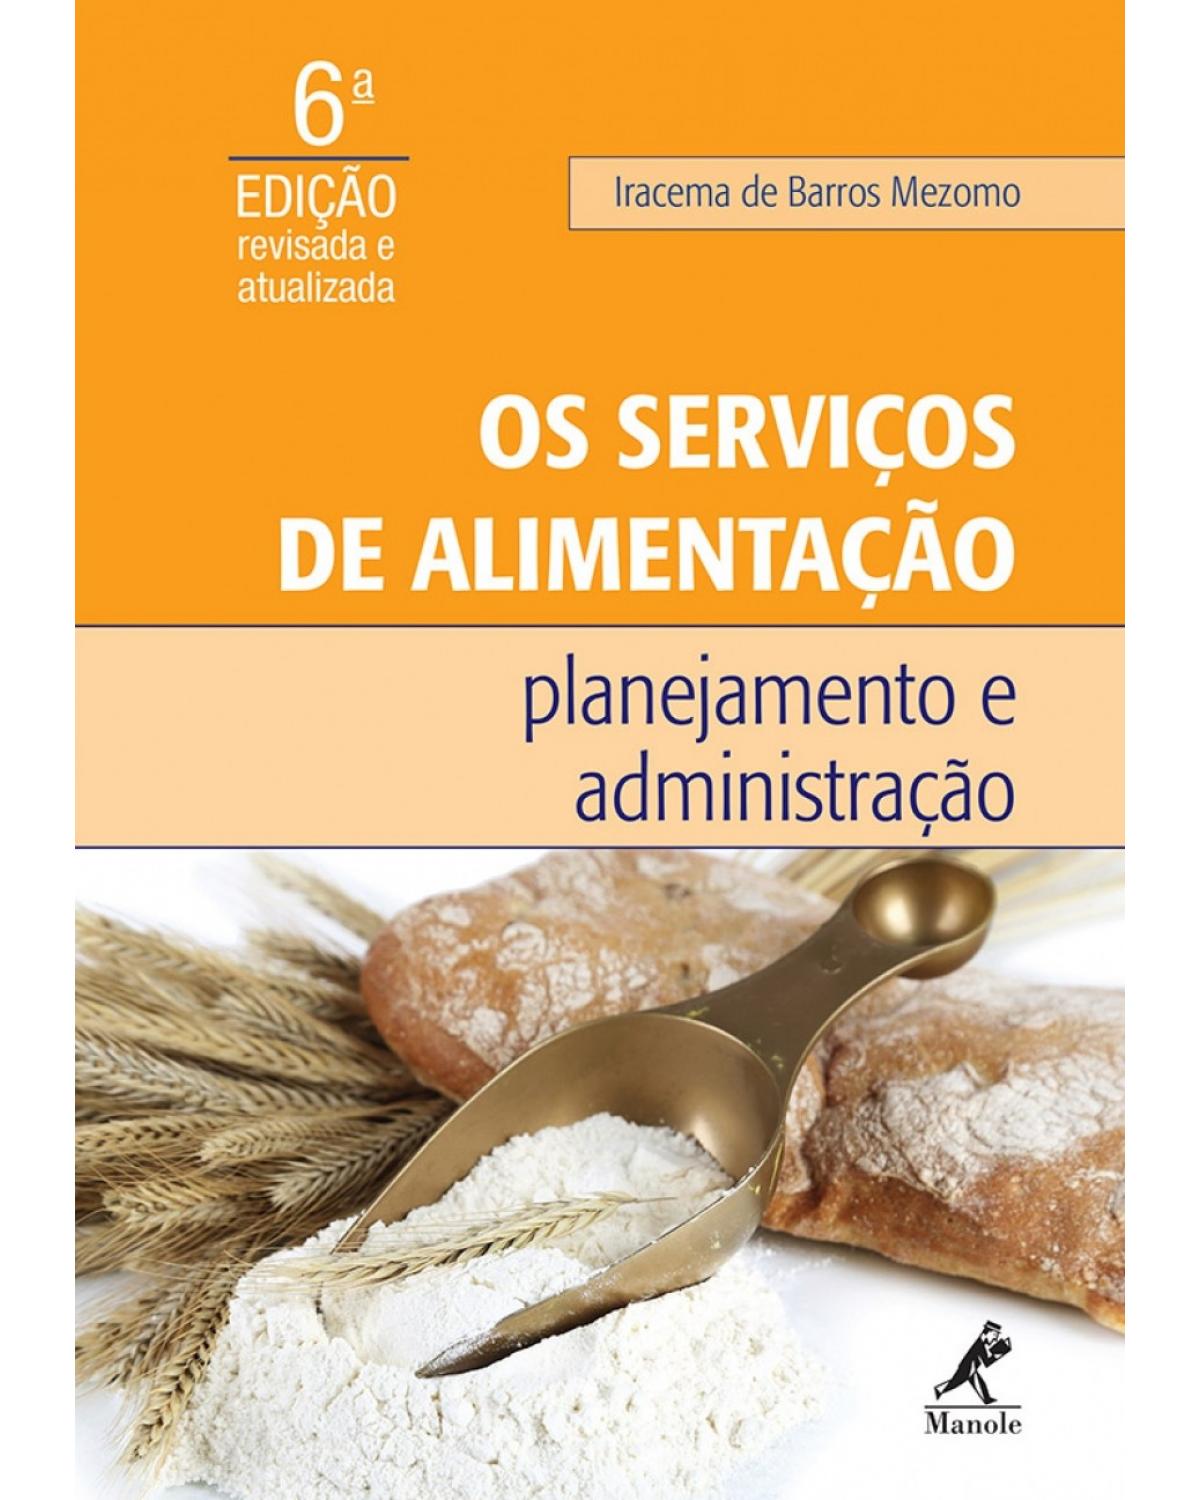 Os serviços de alimentação - Planejamento e administração - 6ª Edição | 2015